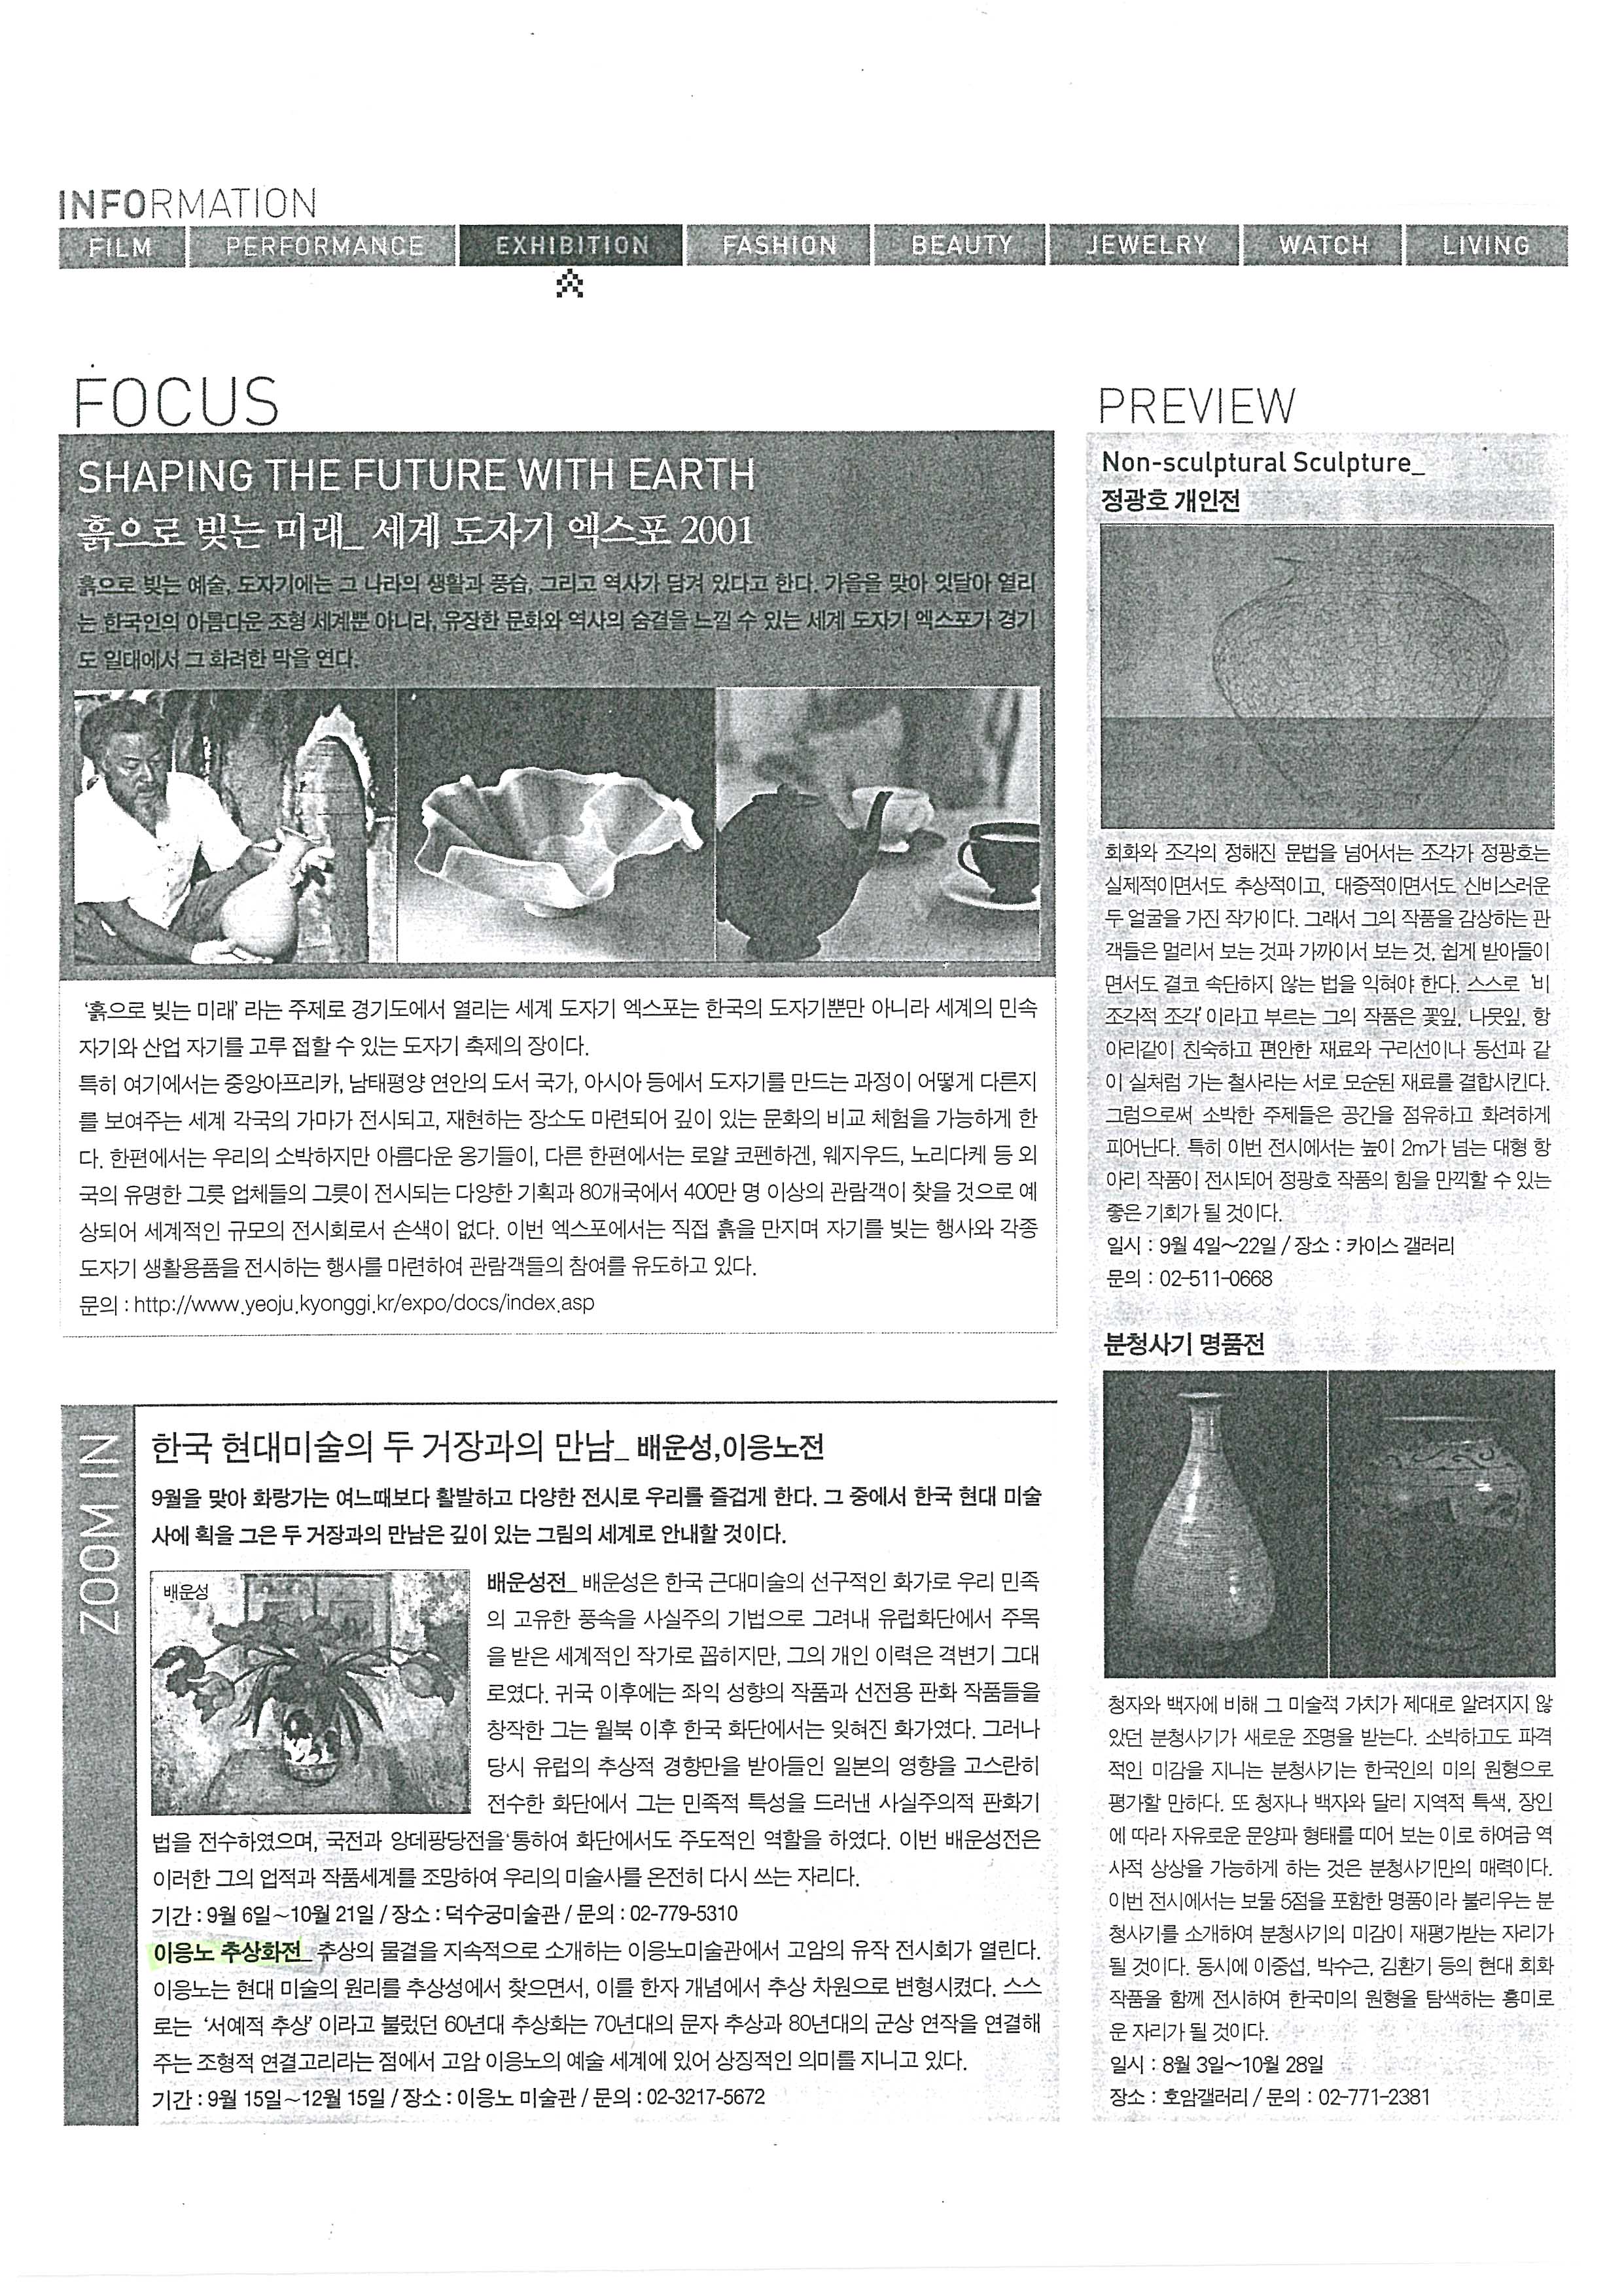  「한국 현대미술의 두 거장과의 만남-이응노 추상화전」,  「LEE EUNGNO'S ABSTRACT PAINTING EXHIBITION」, 『J.J MAGAZINE』